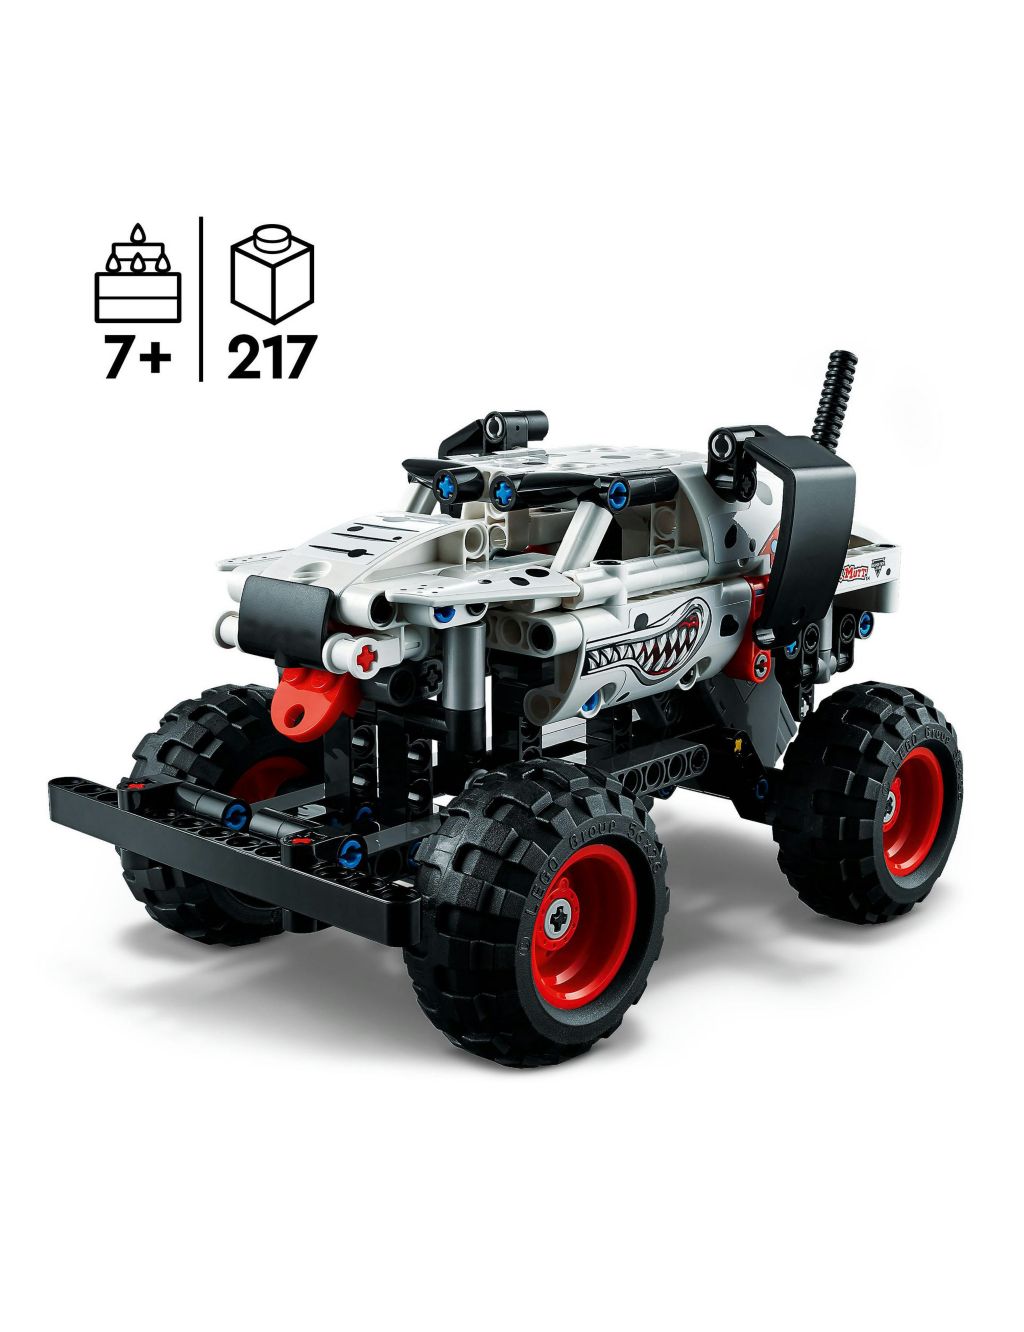 LEGO Technic Monster Jam Monster Mutt Dalmatian (7+ Yrs) image 2